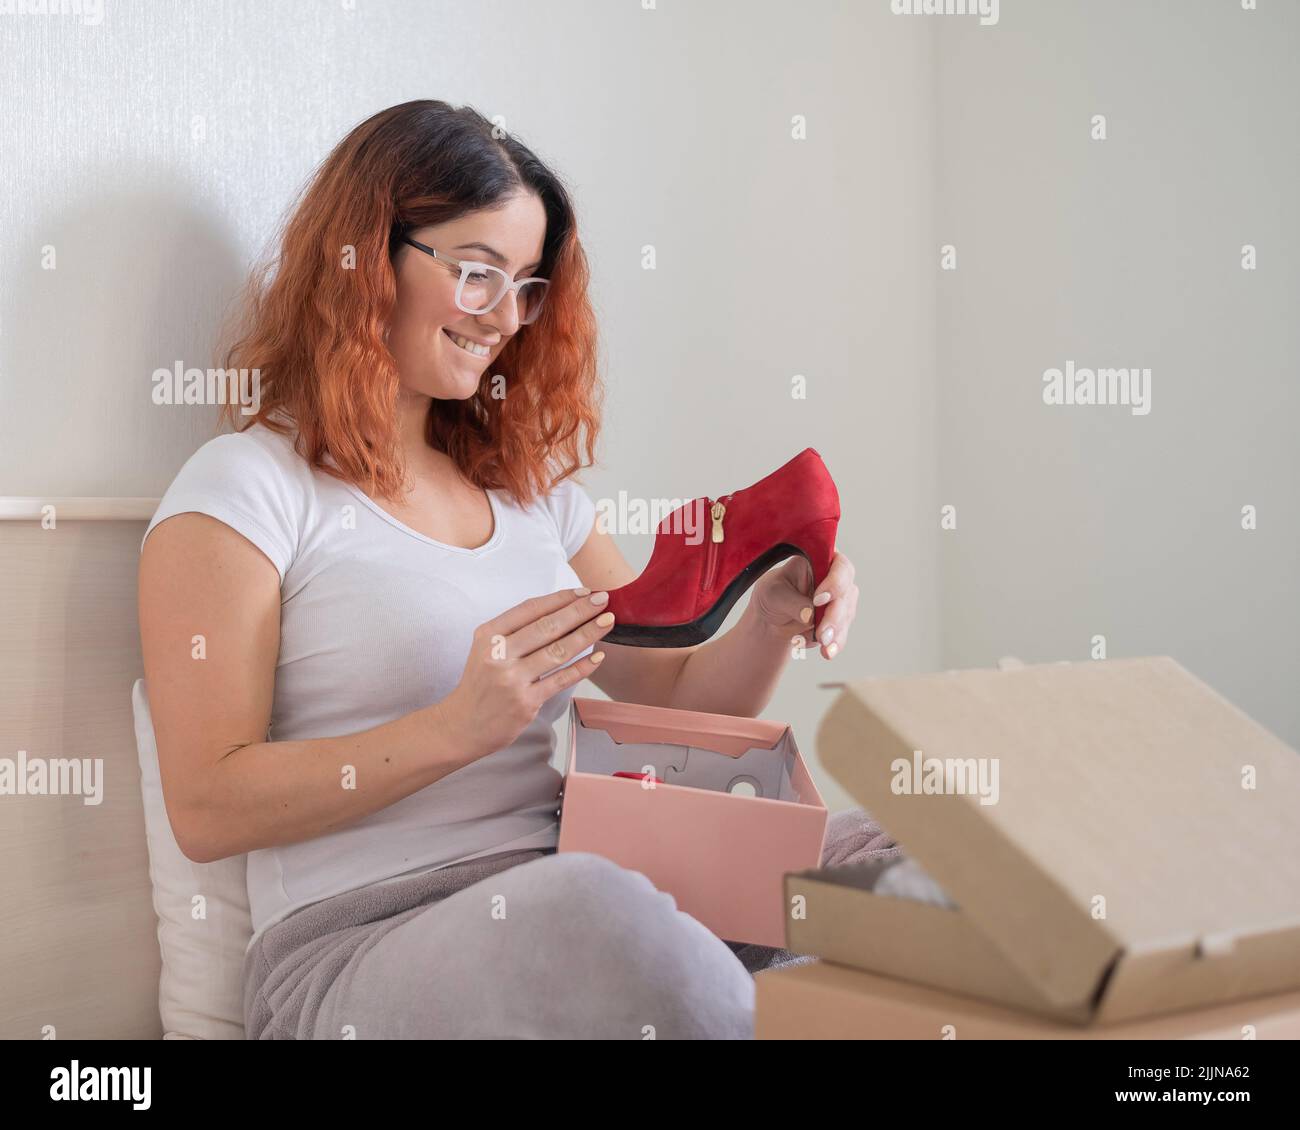 La mujer caucásica abre los zapatos ordenados está sentada en cama. Concepto de compra en línea con entrega a domicilio Fotografía de stock - Alamy